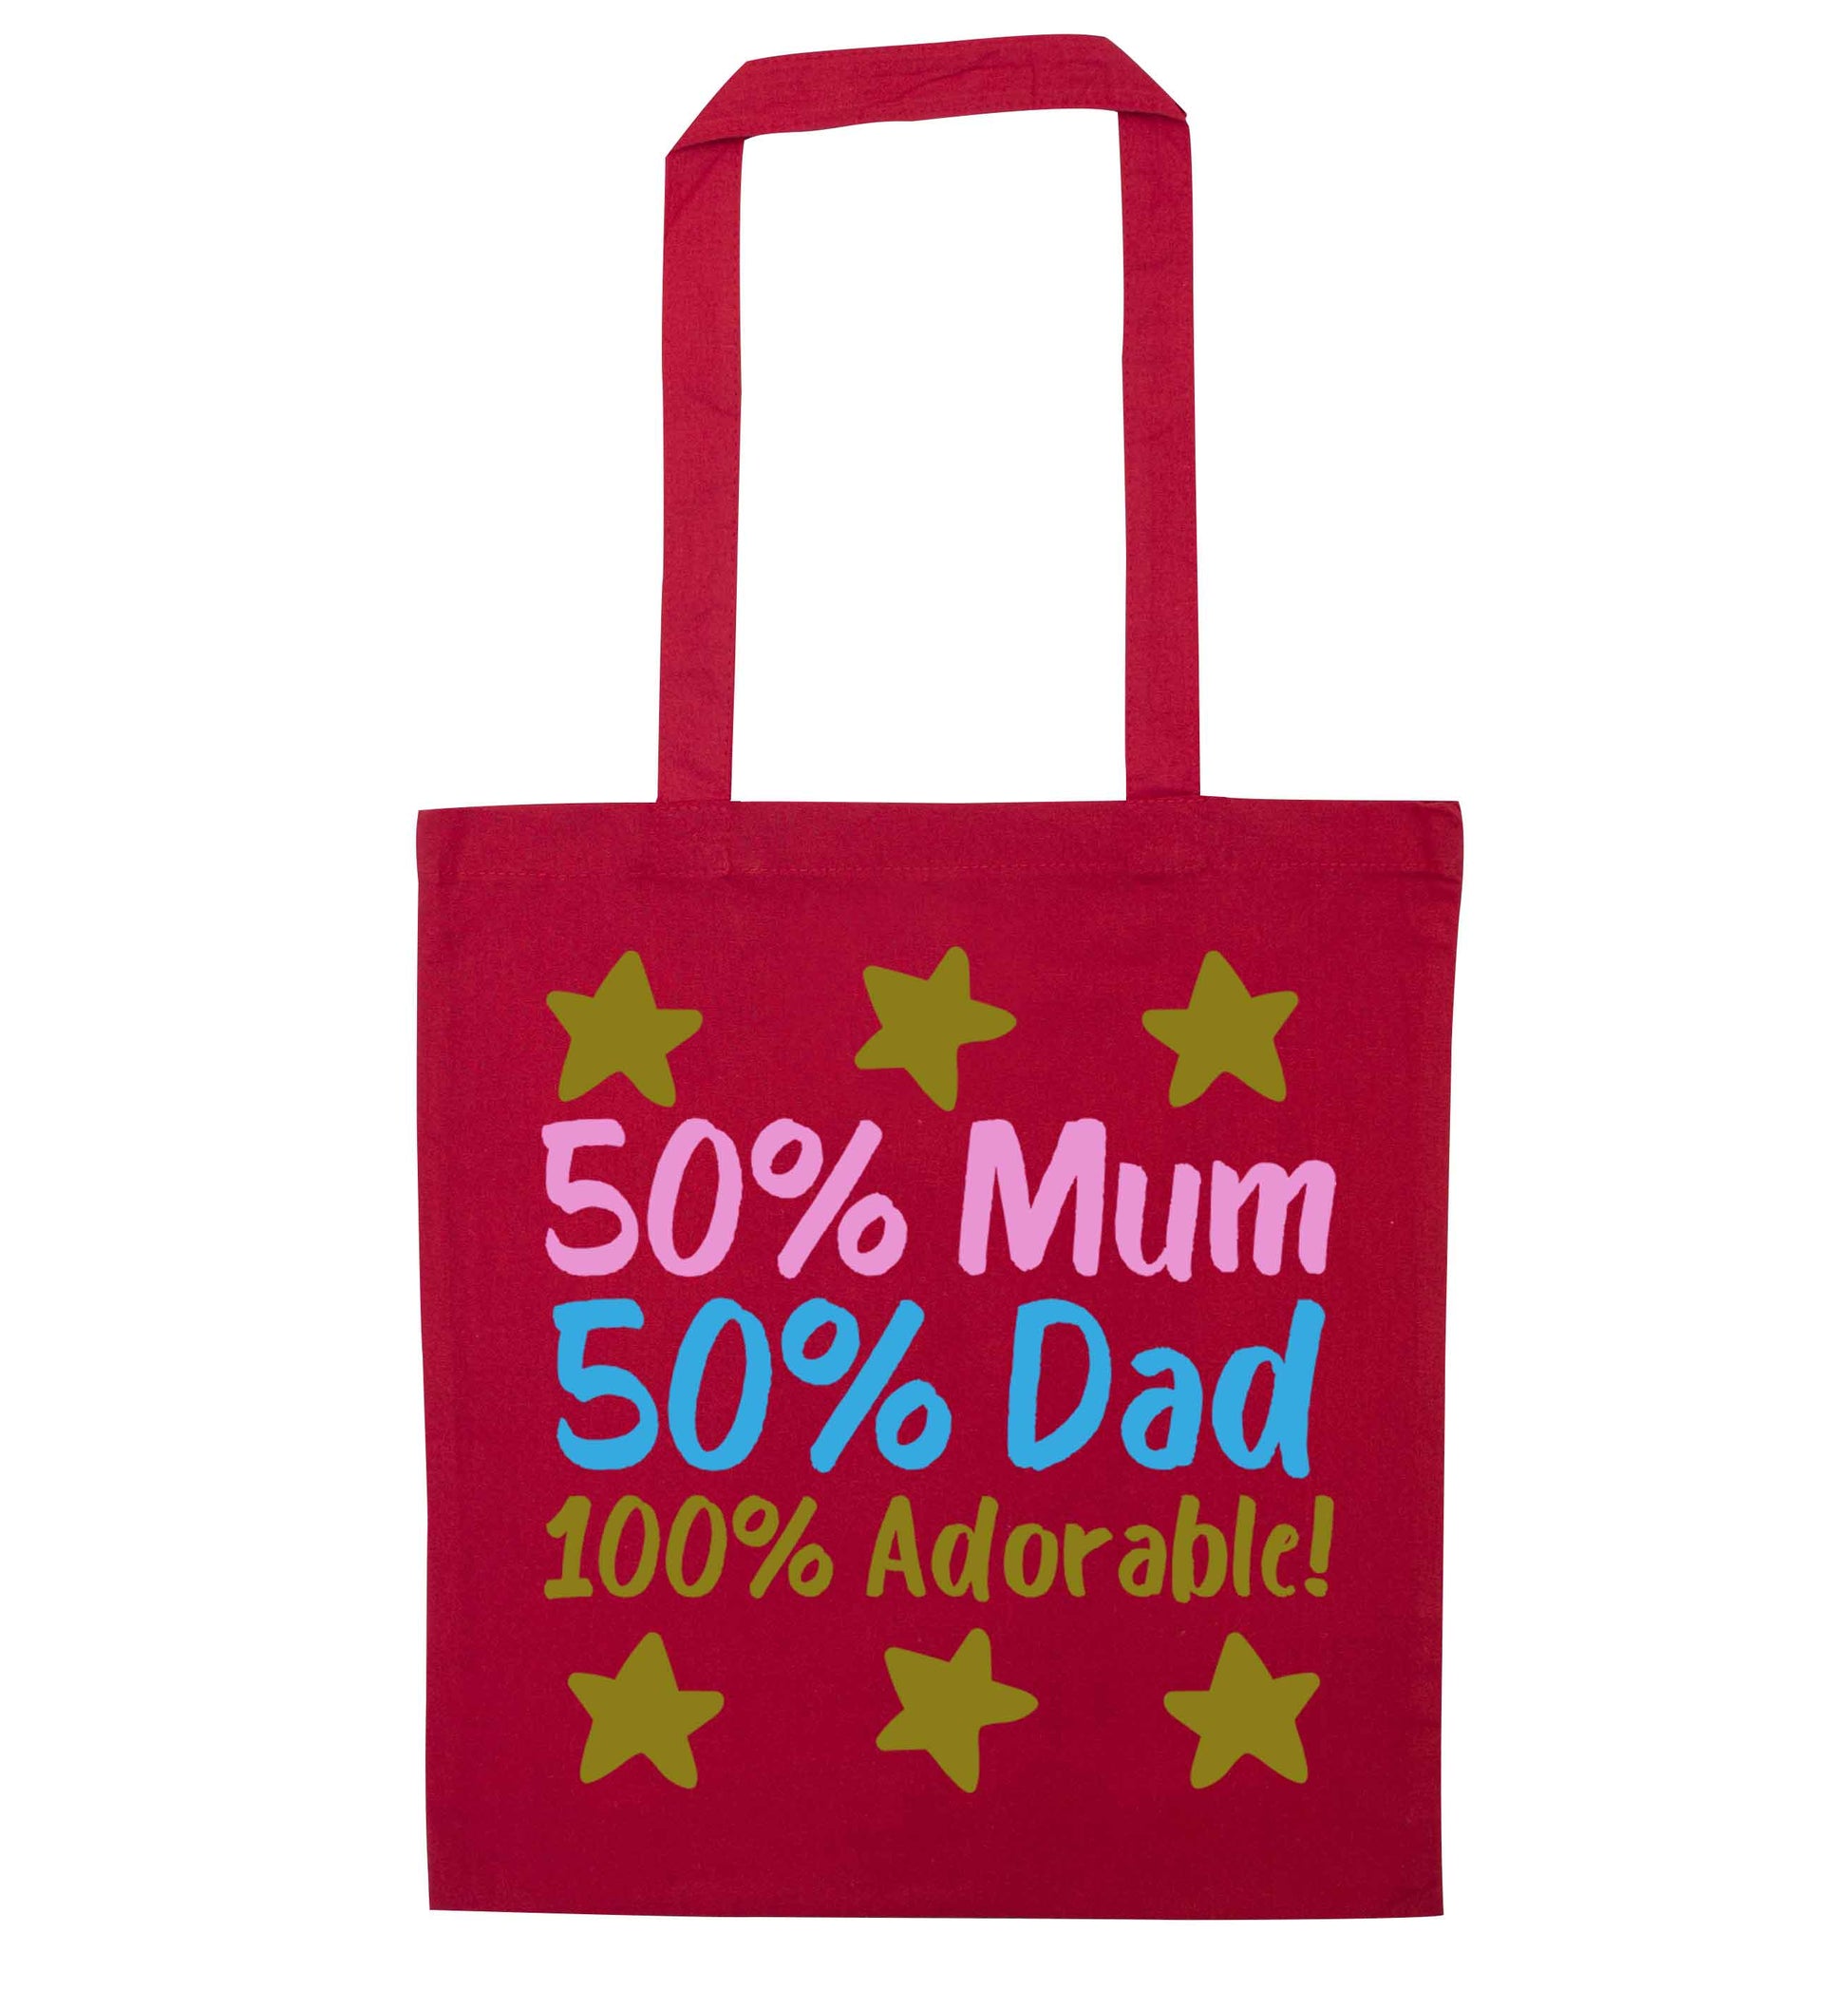 50% mum 50% dad 100% adorable red tote bag